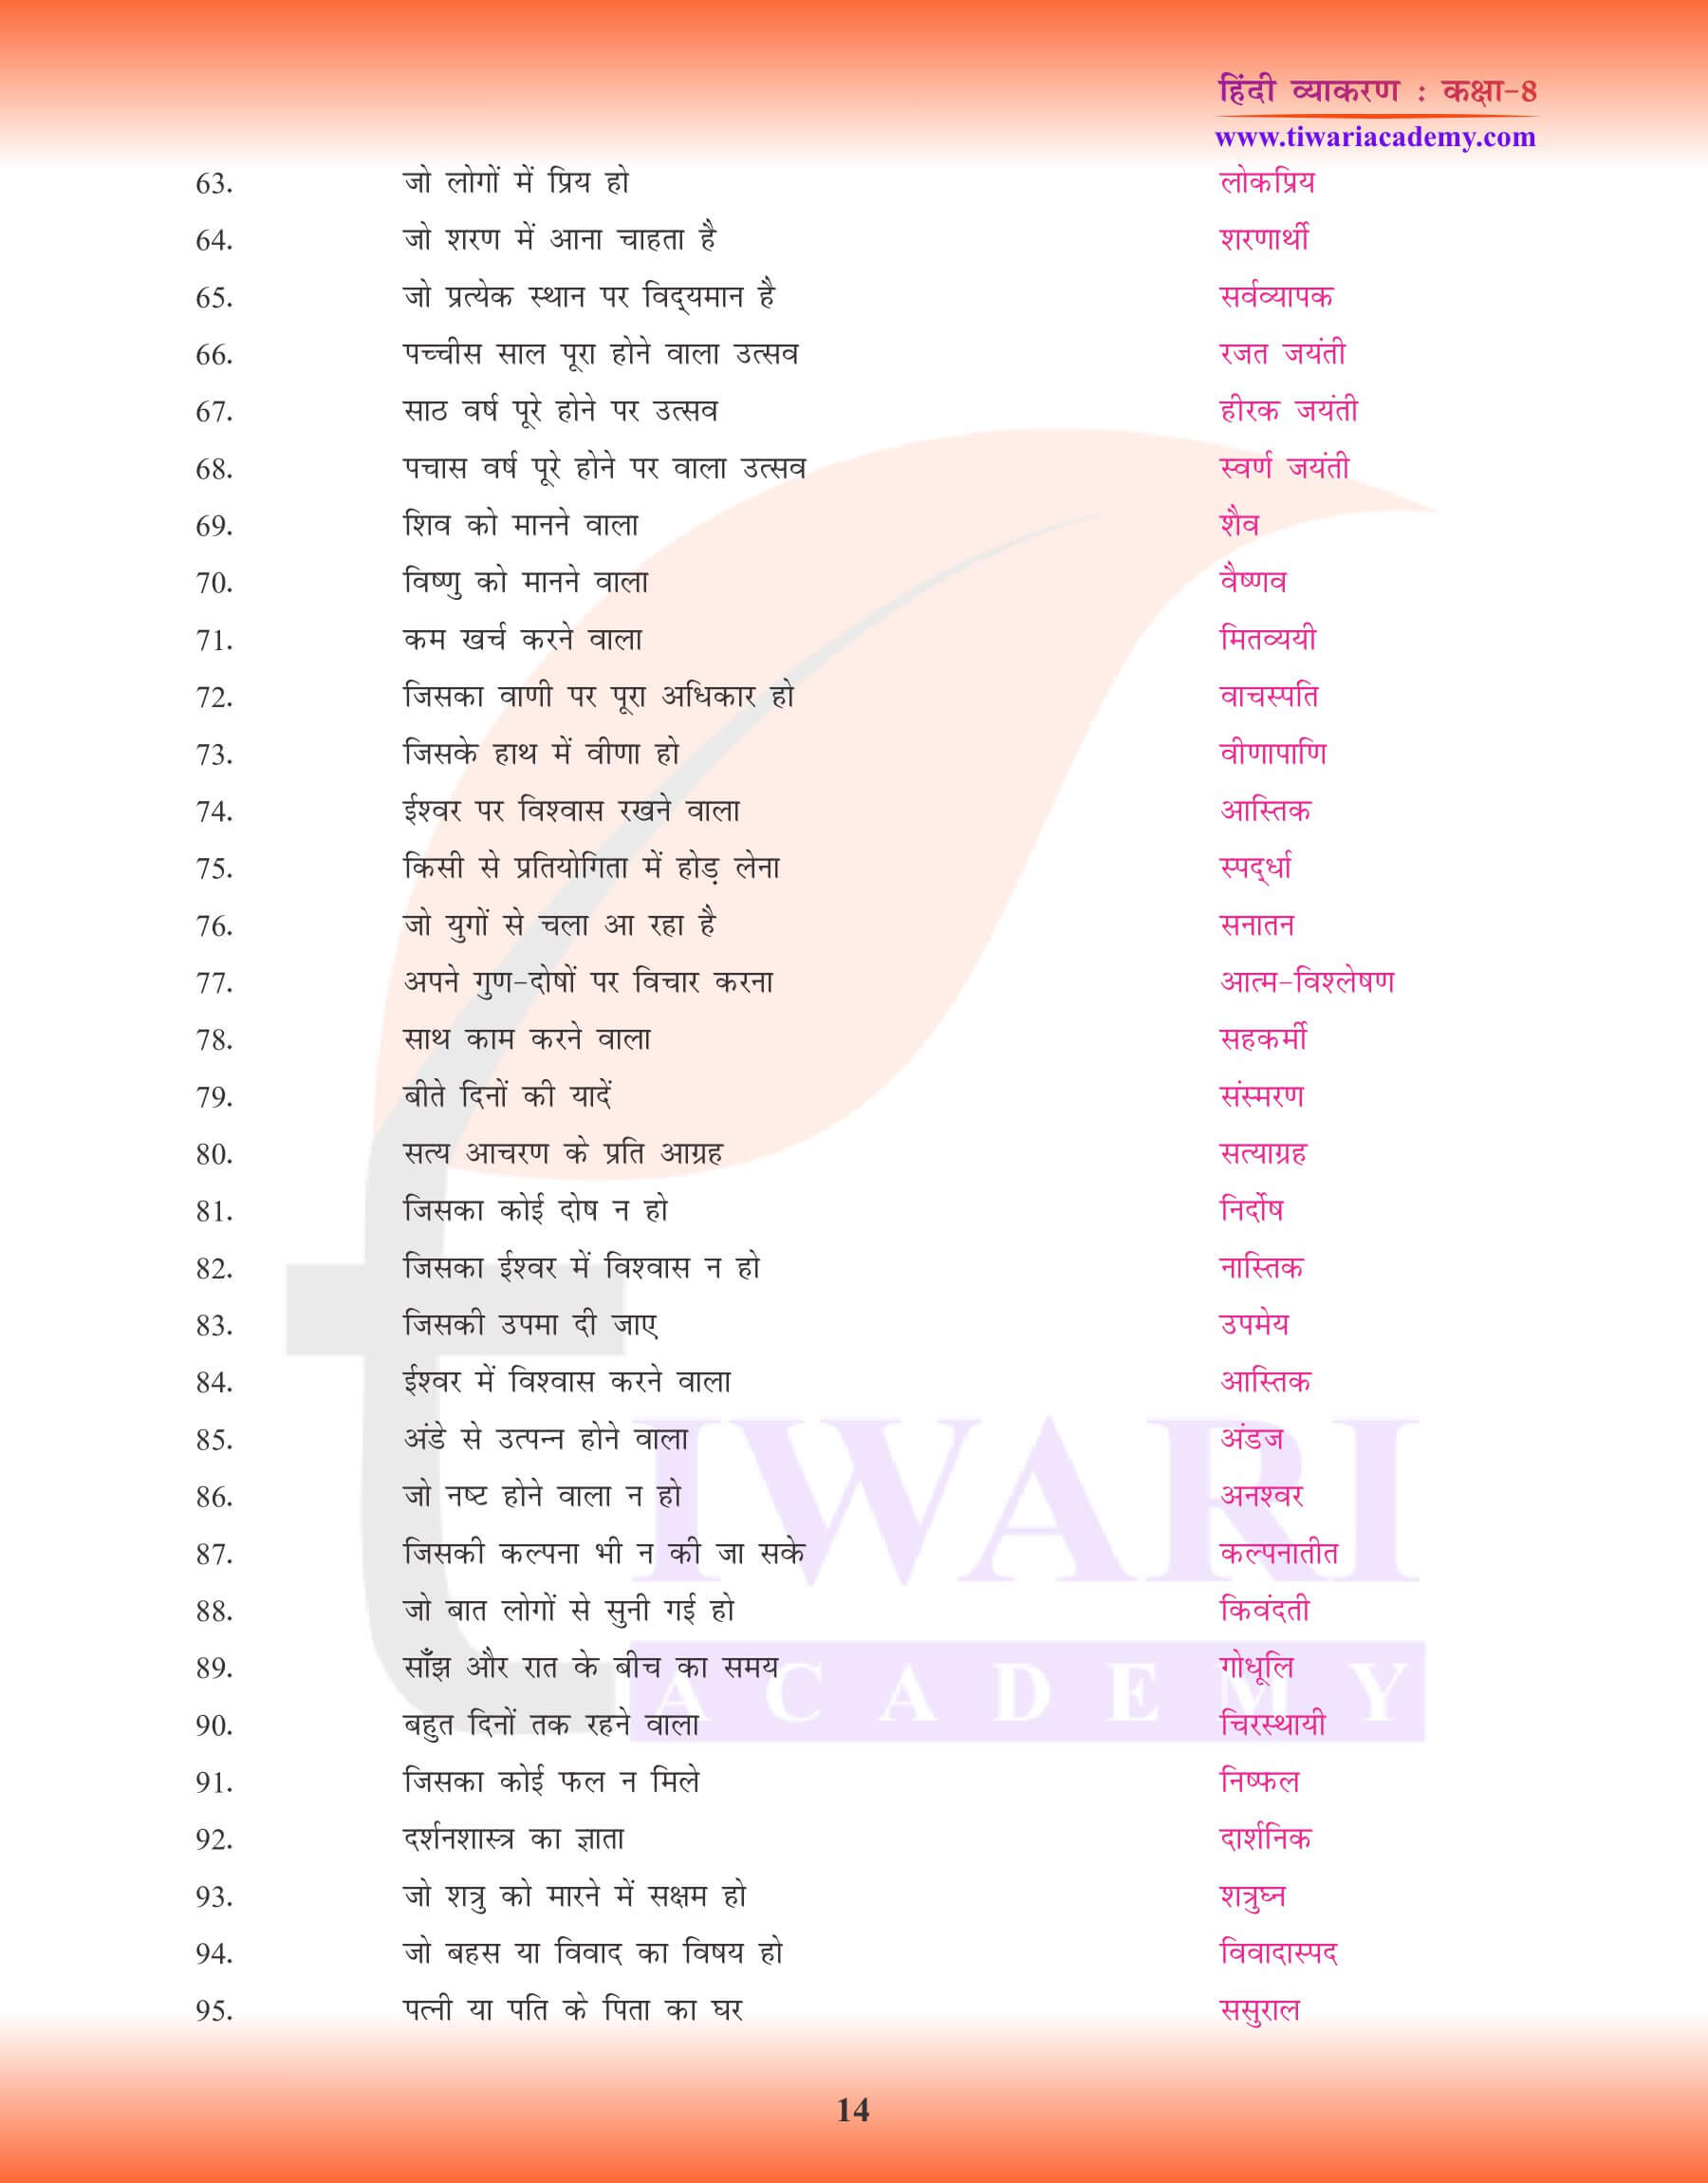 कक्षा 8 हिंदी व्याकरण में अनेक शब्दों के लिए एक शब्द नोट्स